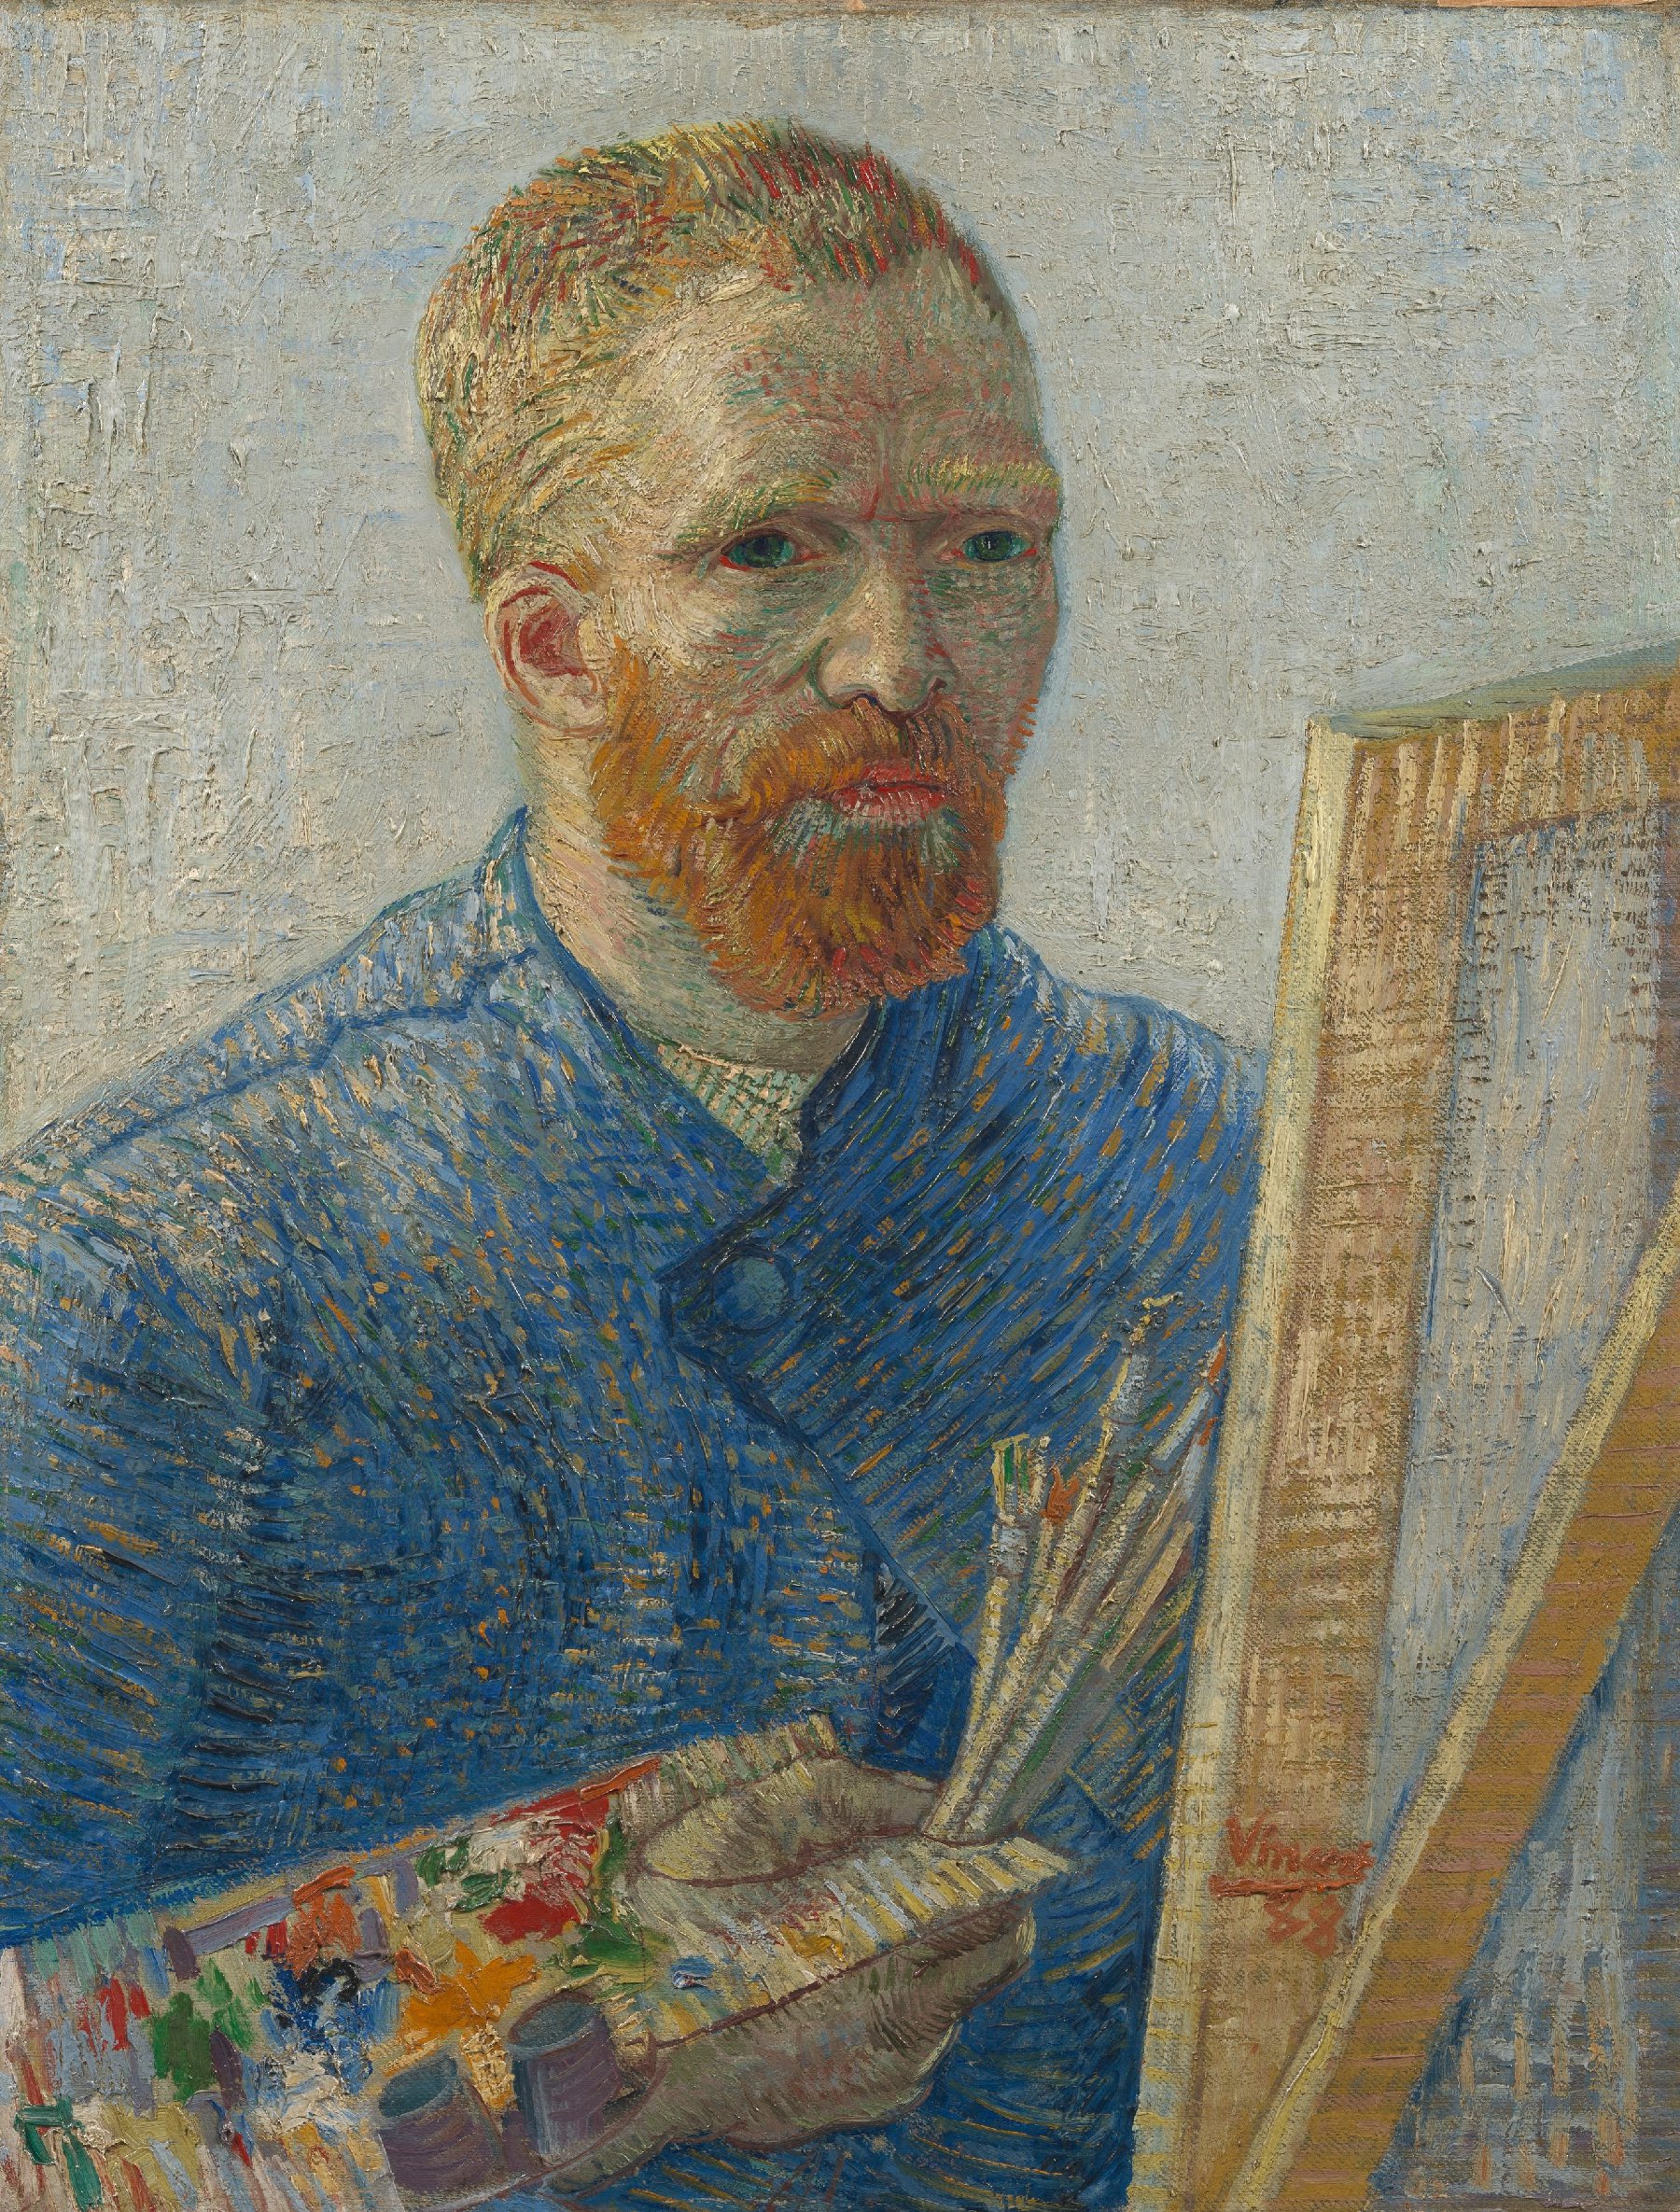 Zelfportret als schilder Vincent van Gogh (1853 - 1890), Parijs, december 1887-februari 1888